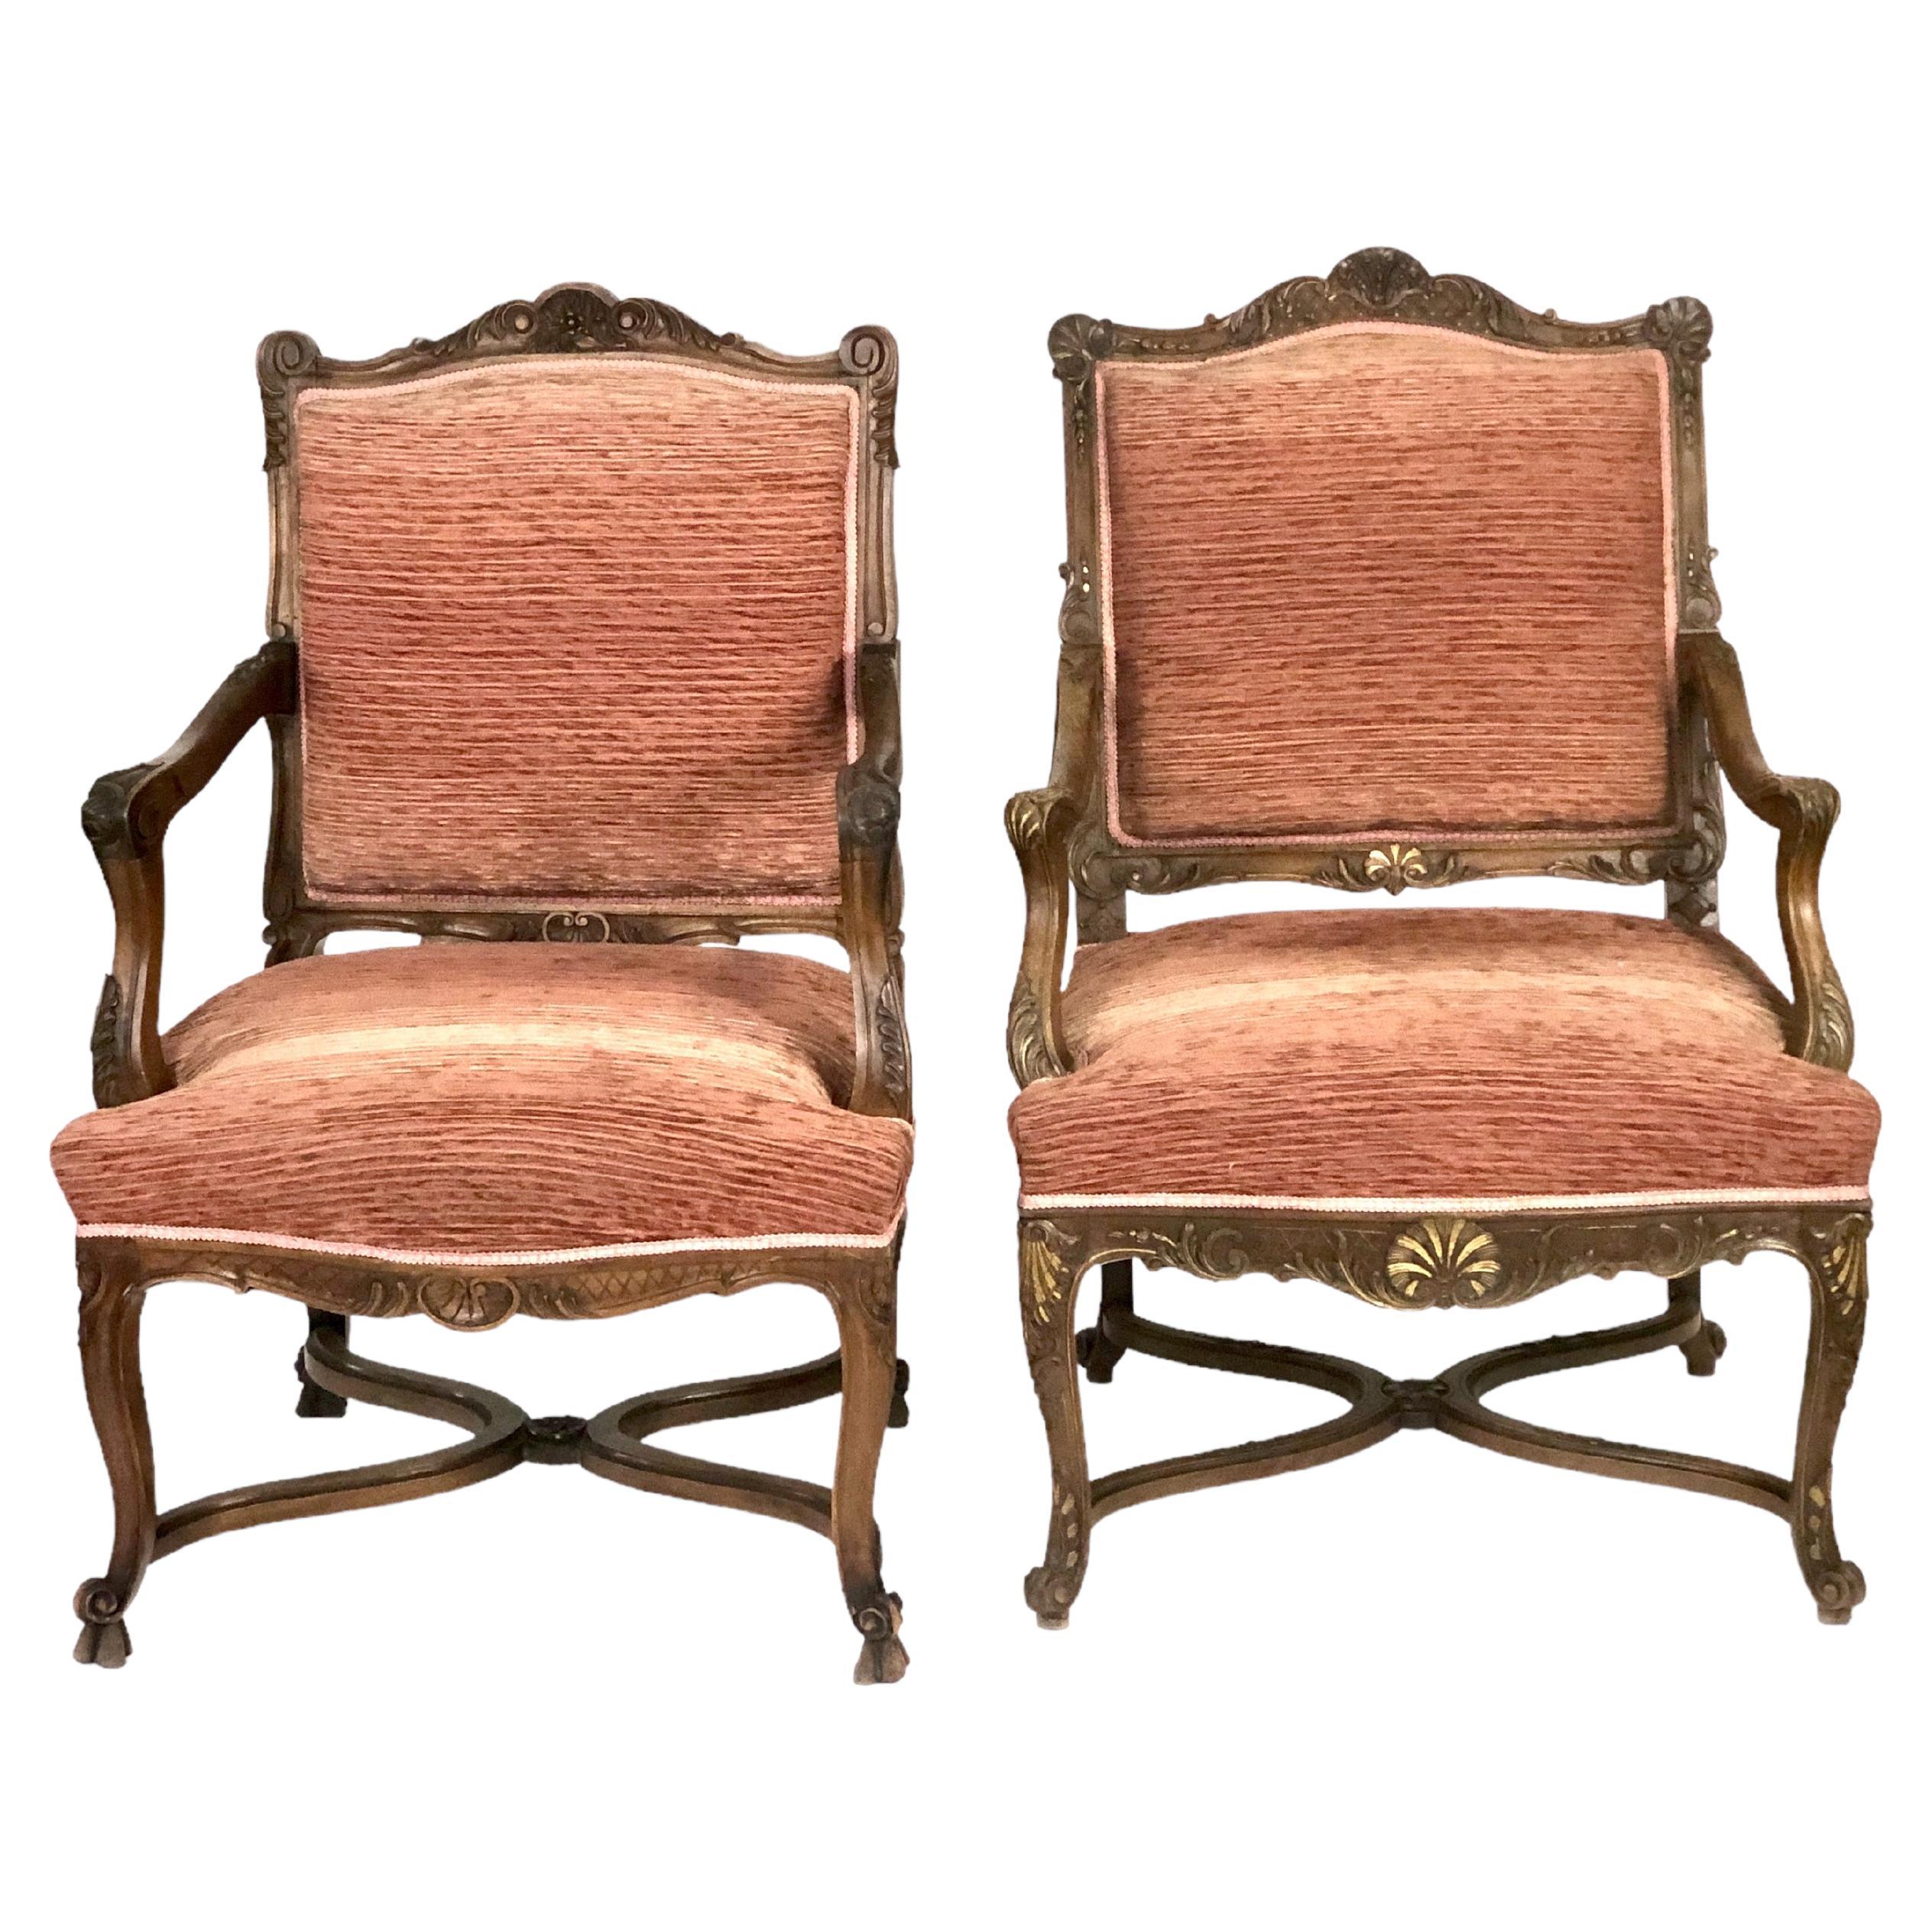 Paire de chaises Regency en noyer du 19e siècle appelées Fauteuils à La Reine